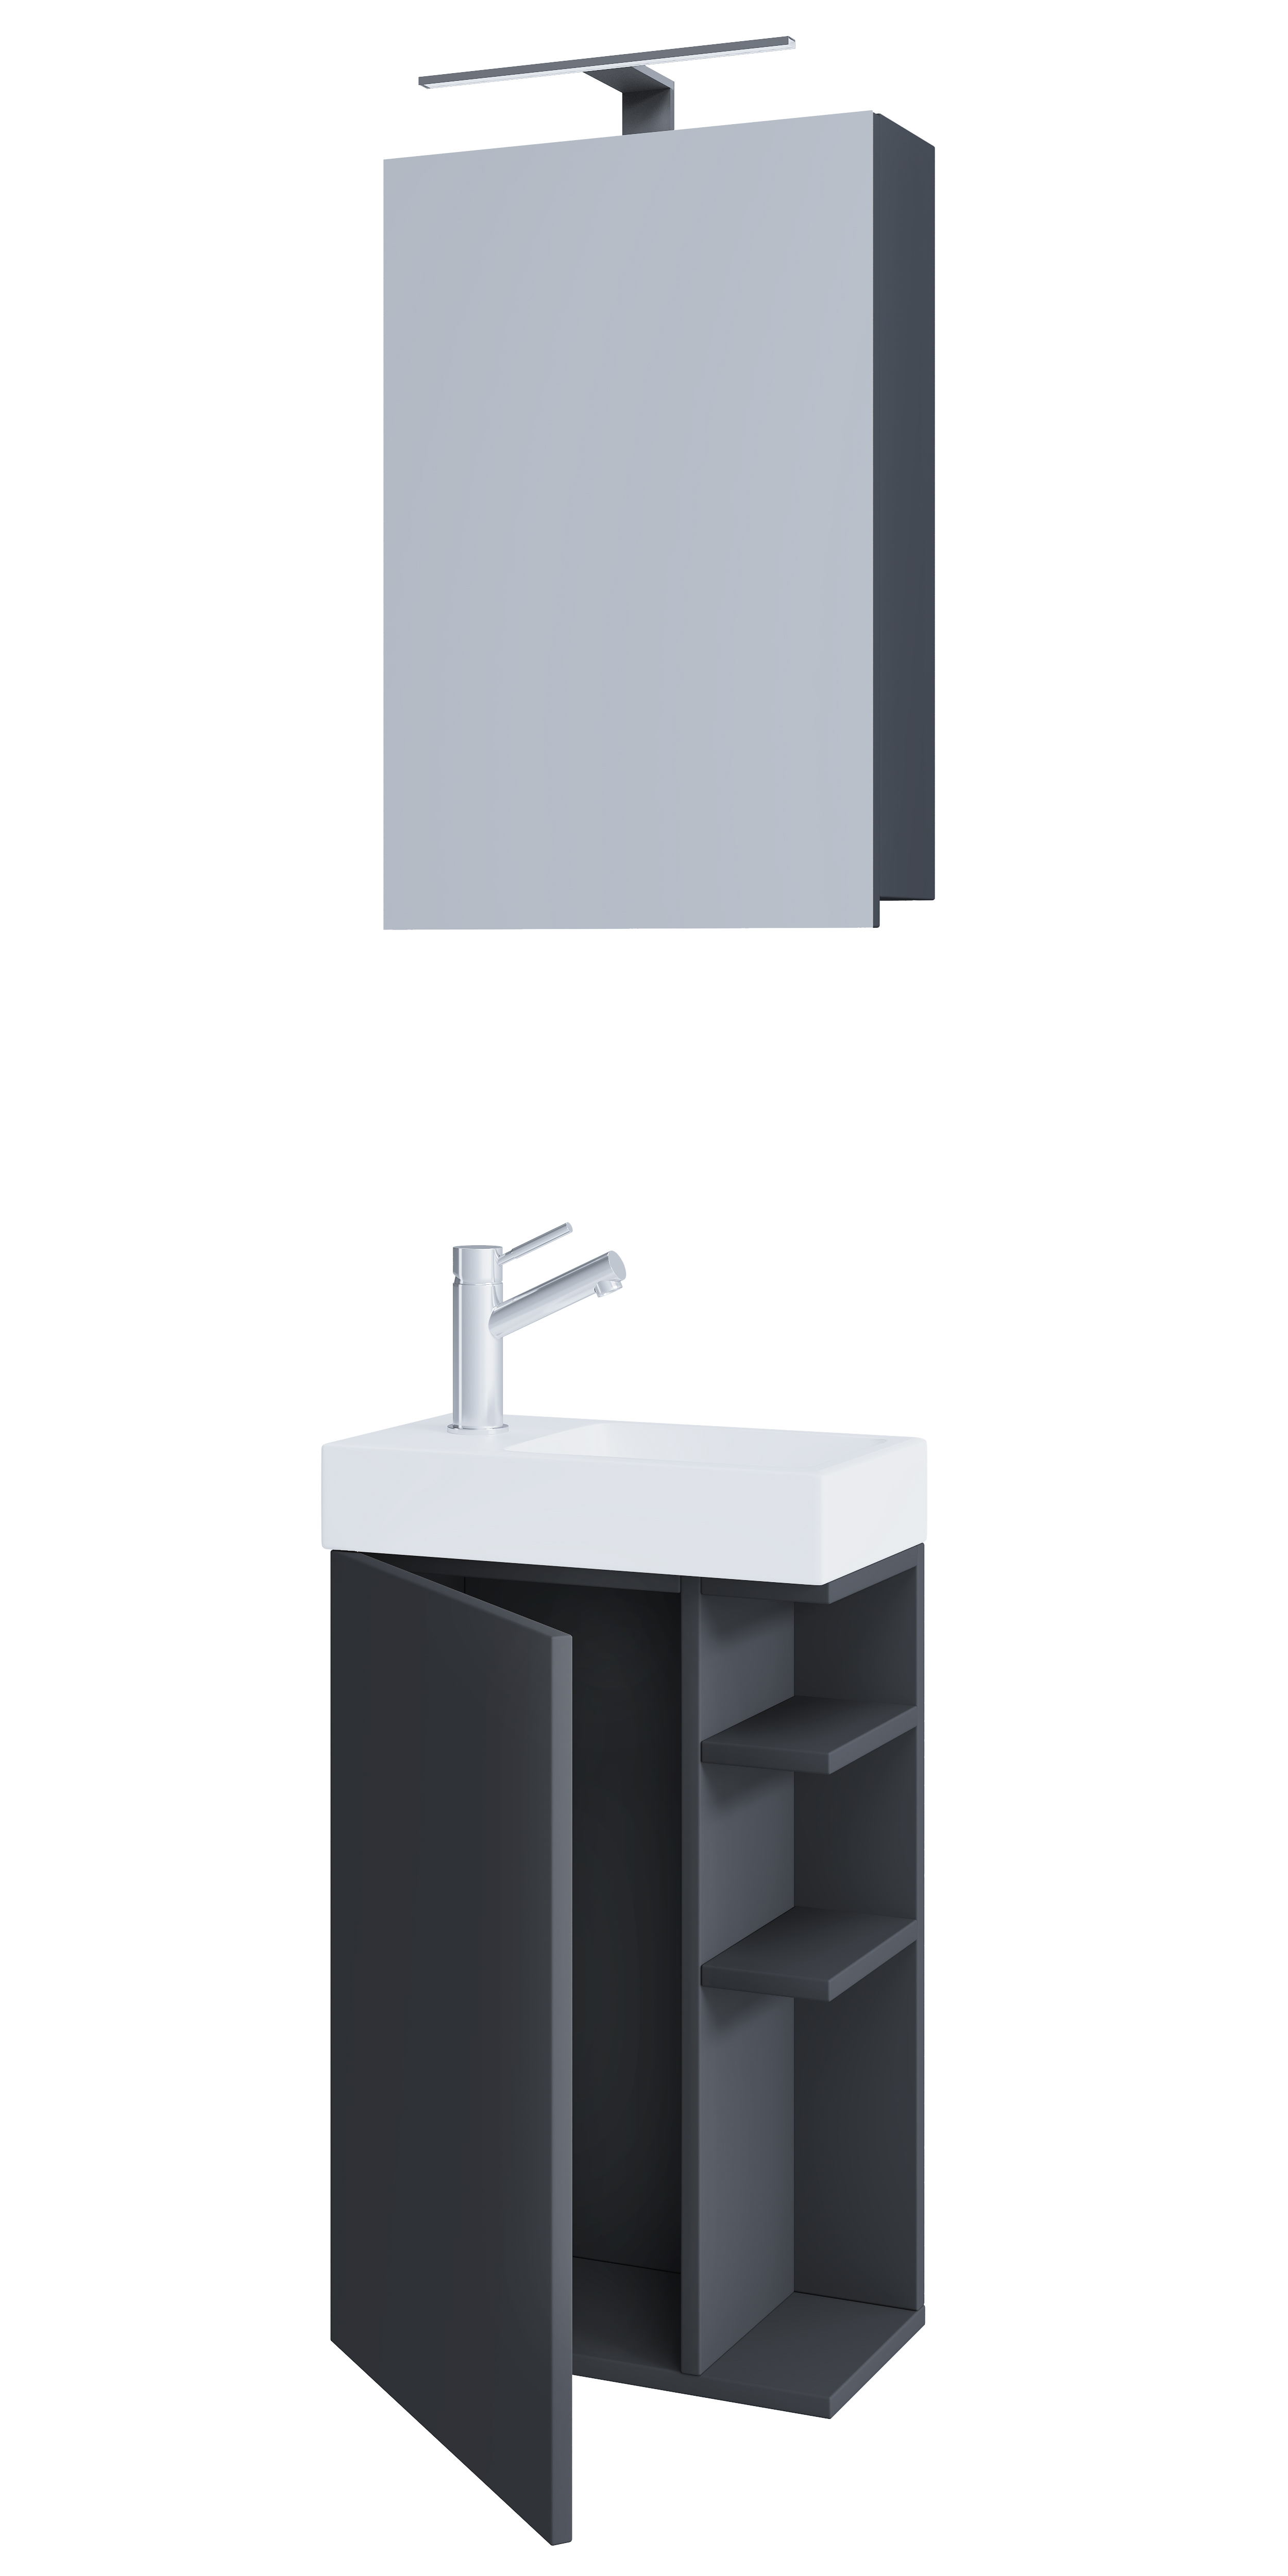 Billede af VCM NORDIC Lumia 3-delt gæstevaskeplads, m. spejlskab, håndvask, 1 låge, 2 hylder - antracitgrå træ